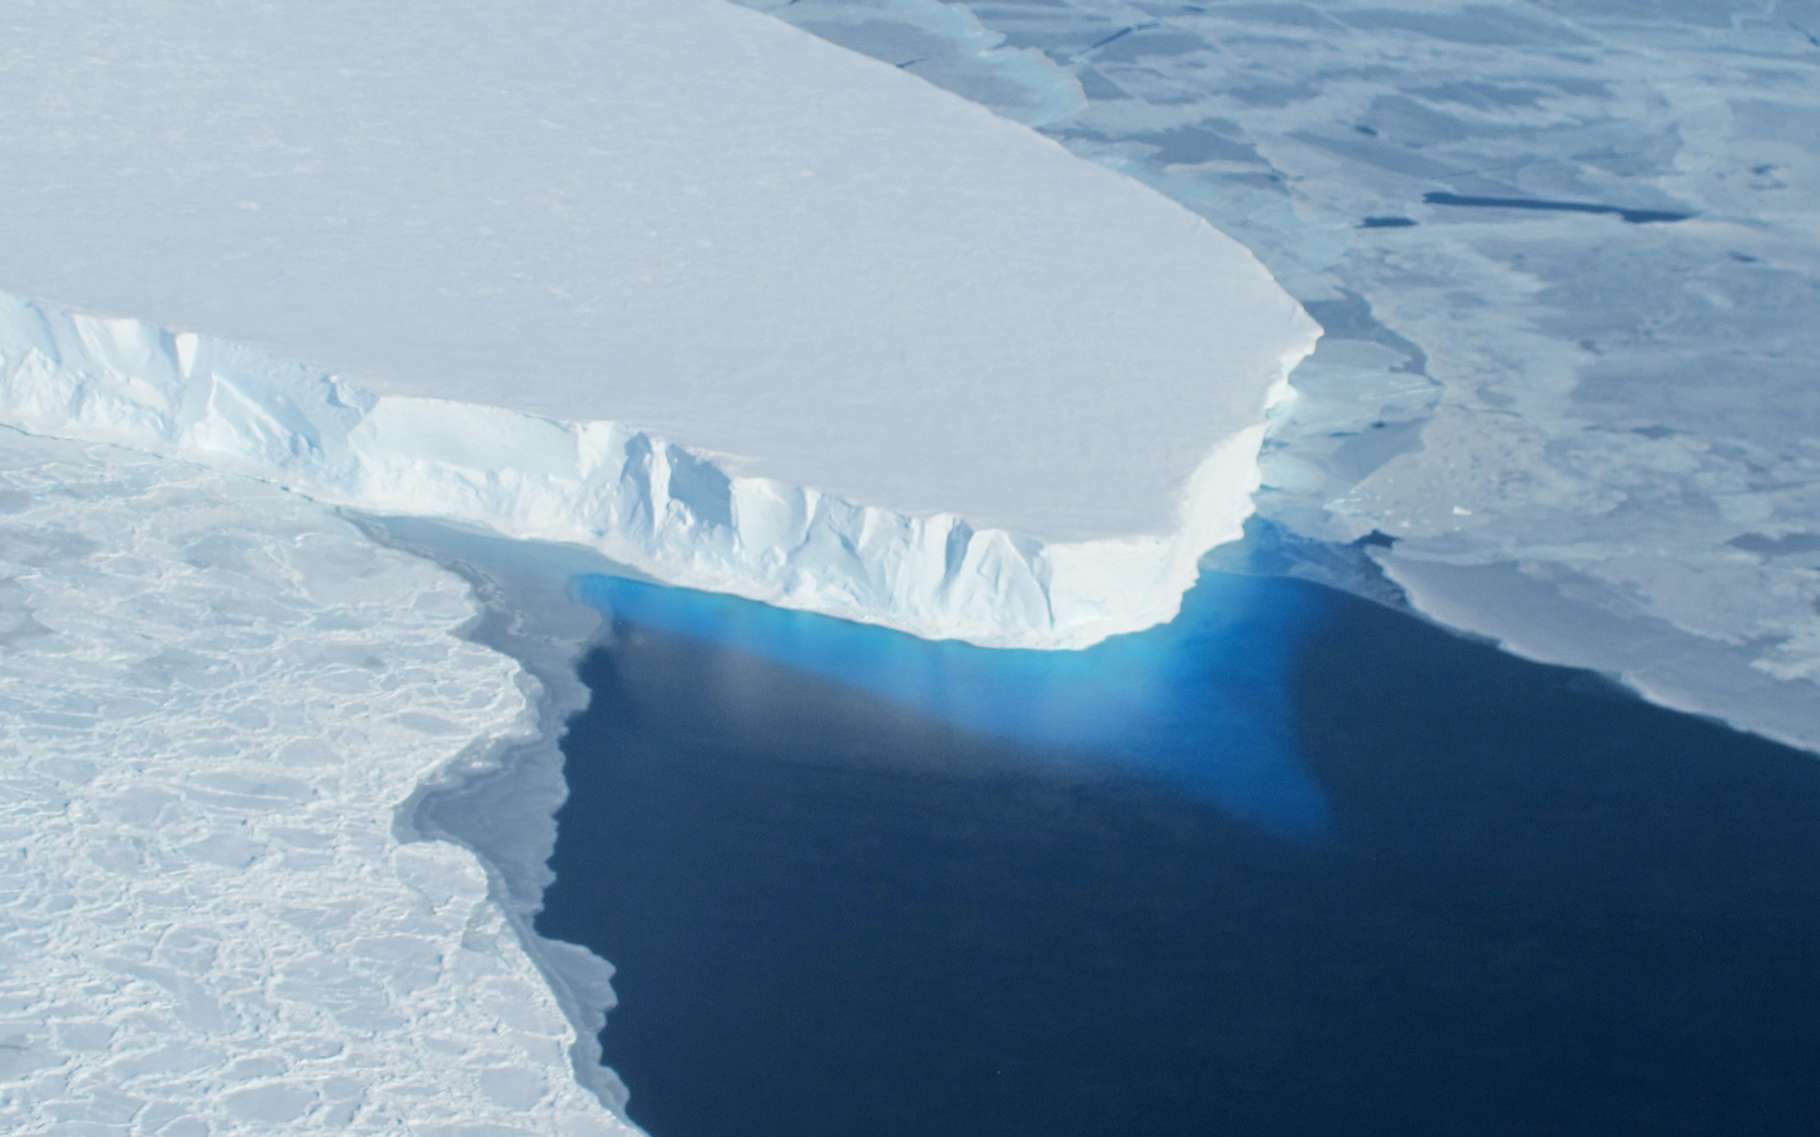 Ici, la langue glaciaire du glacier Thwaites, dans l’ouest de l’Antarctique. Pour la première fois, des chercheurs ont étudié les dessous de ce glacier à l’aide d’un sous-marin autonome. Et les données qu’il a rapportées sont plutôt inquiétantes. © Nasa